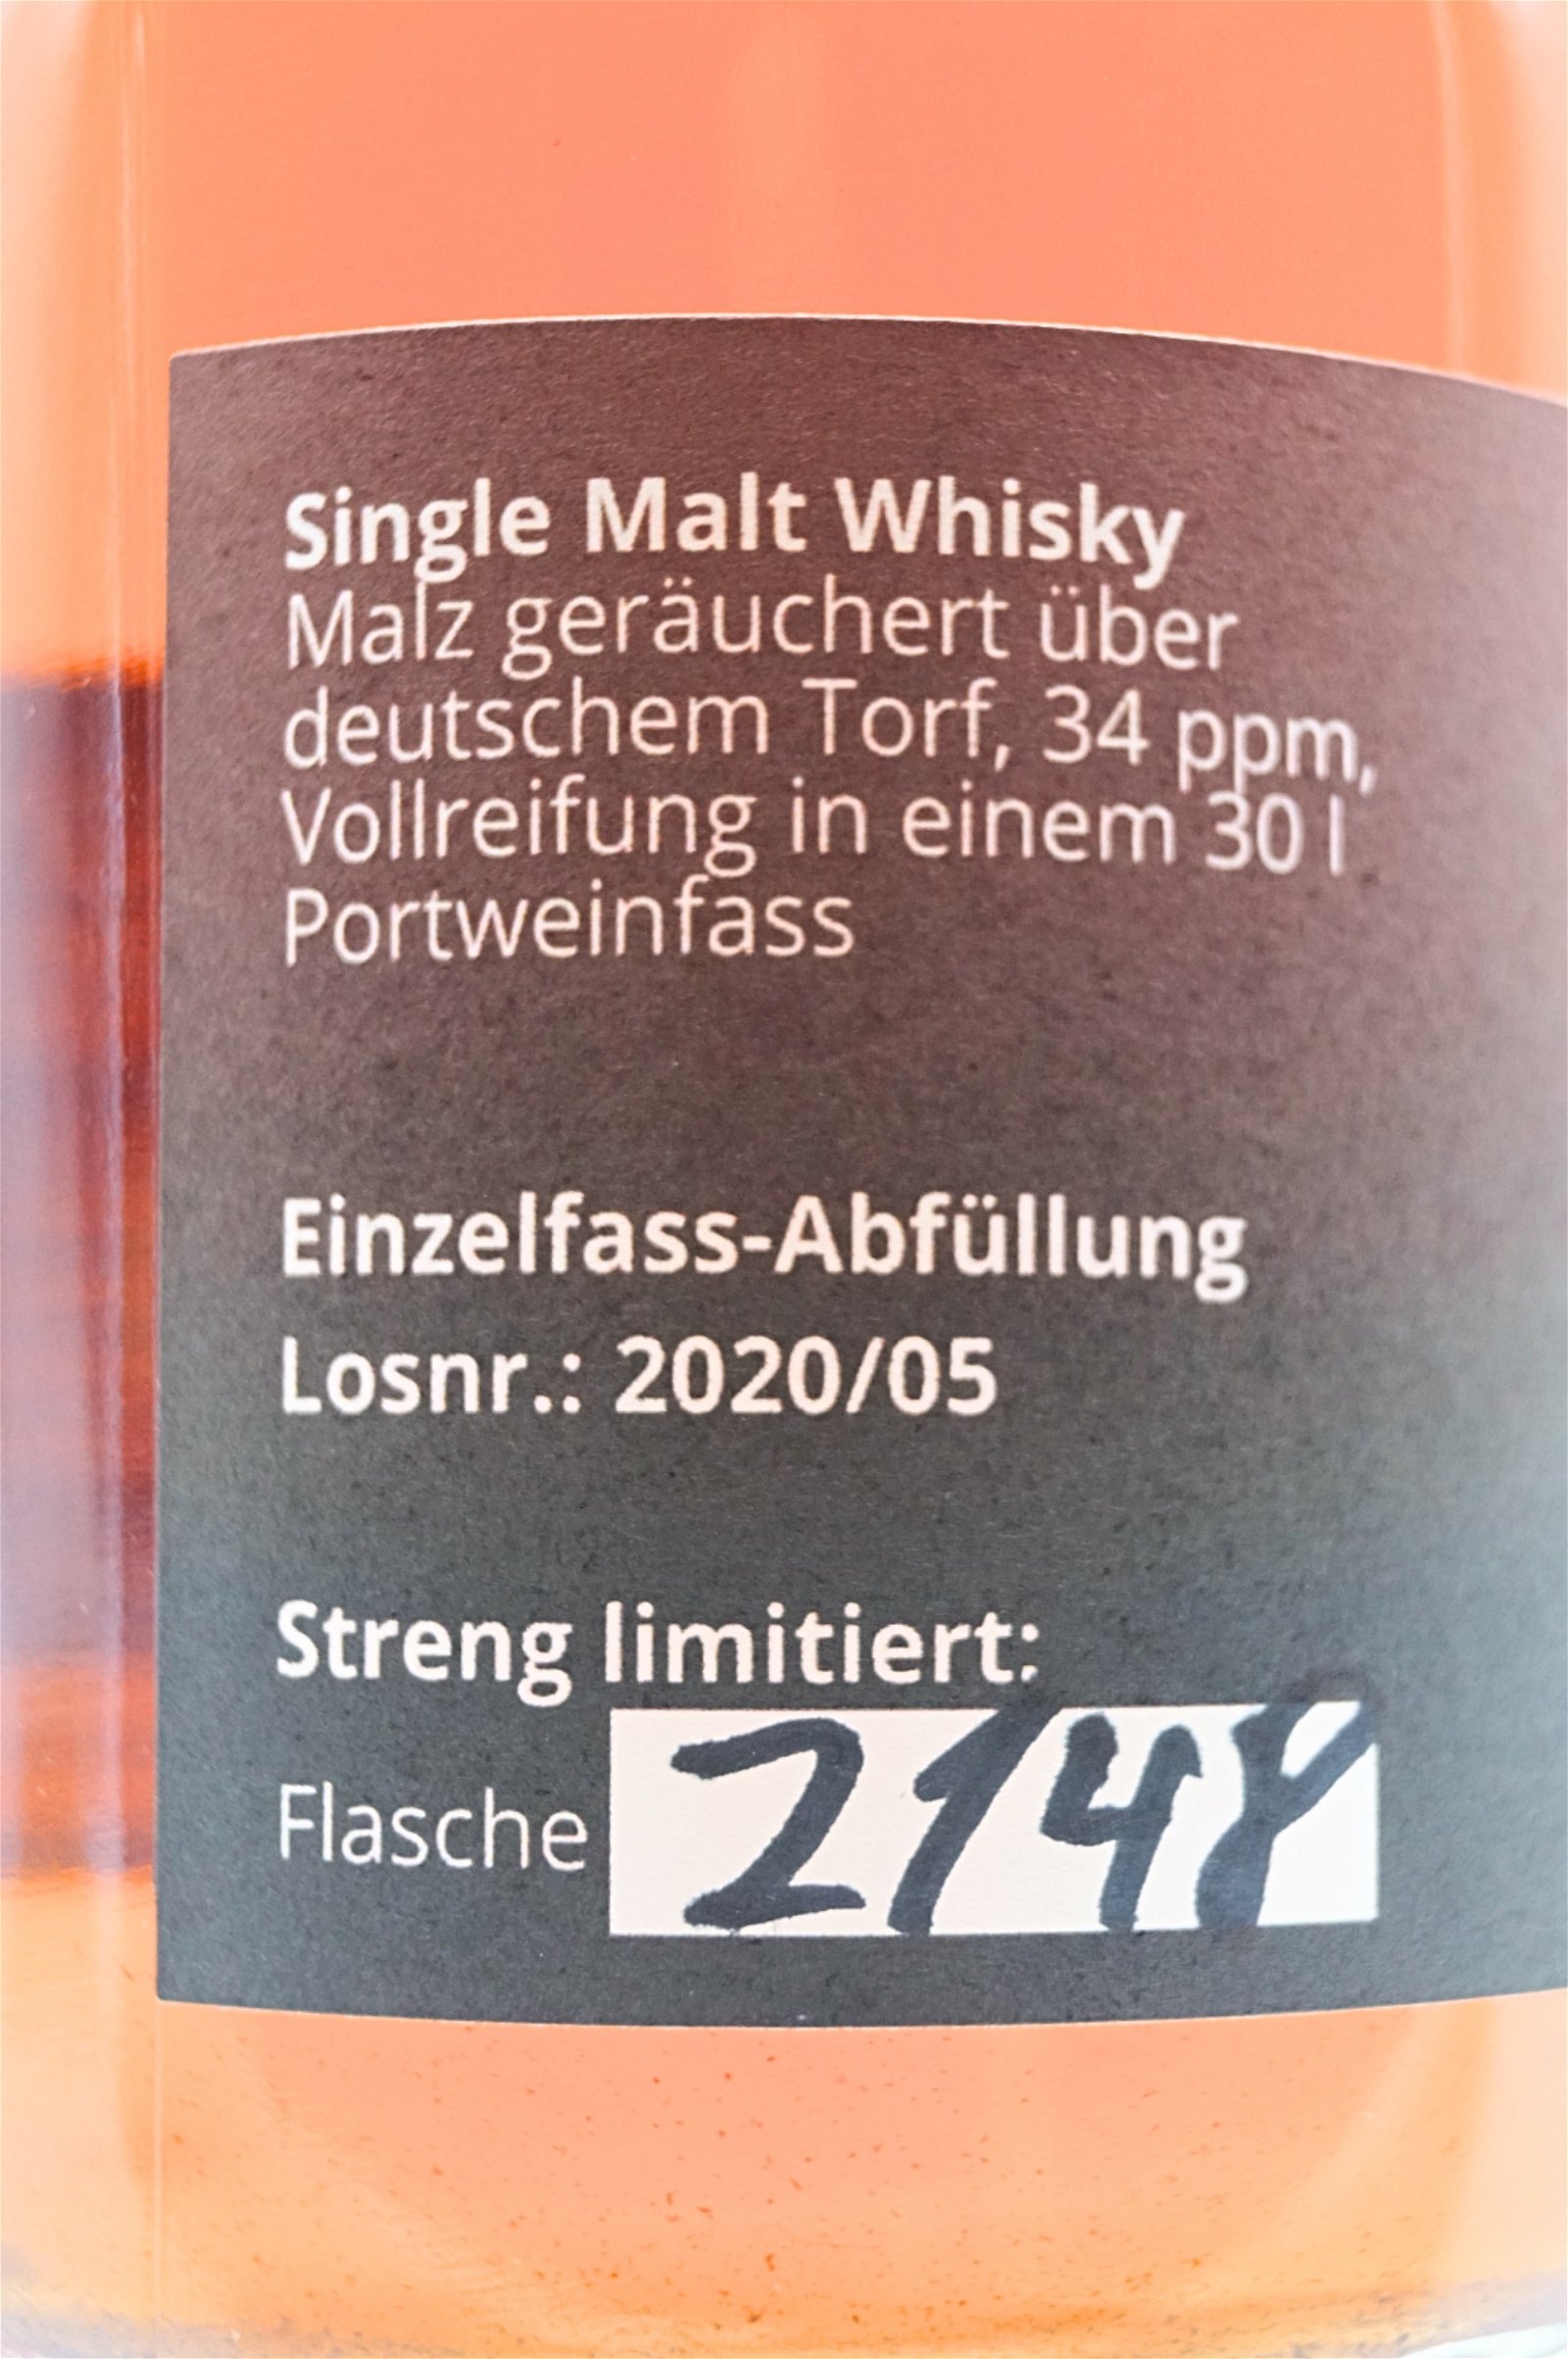 Der Schnapsstodl Single Cask Schwesternfass ANNA Single Malt Whisky